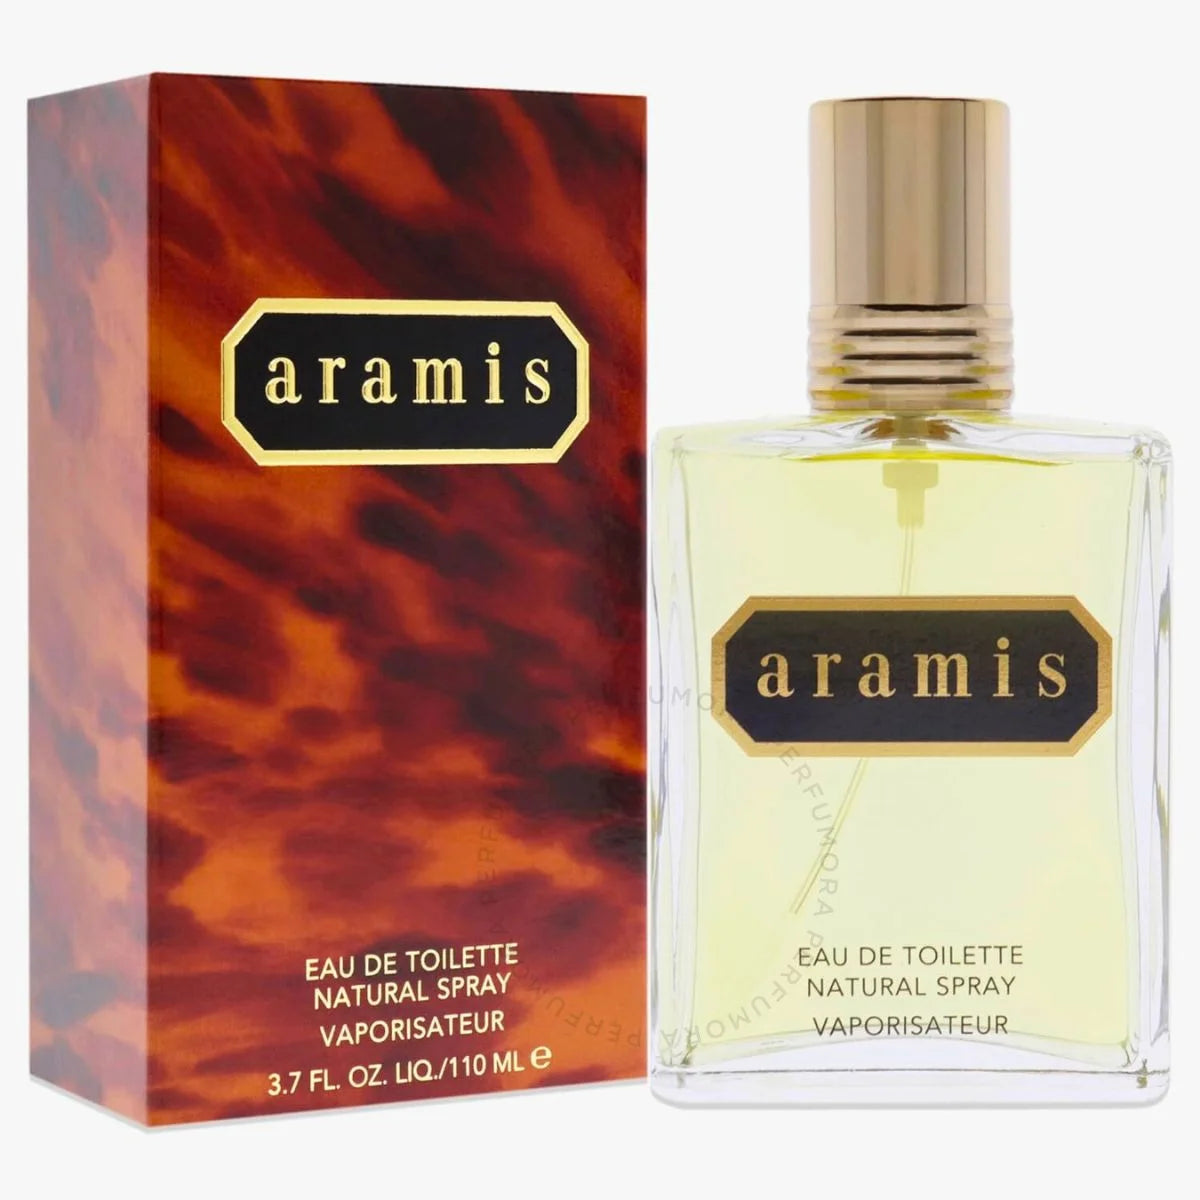 Aramis Classic EDT Spray for Men